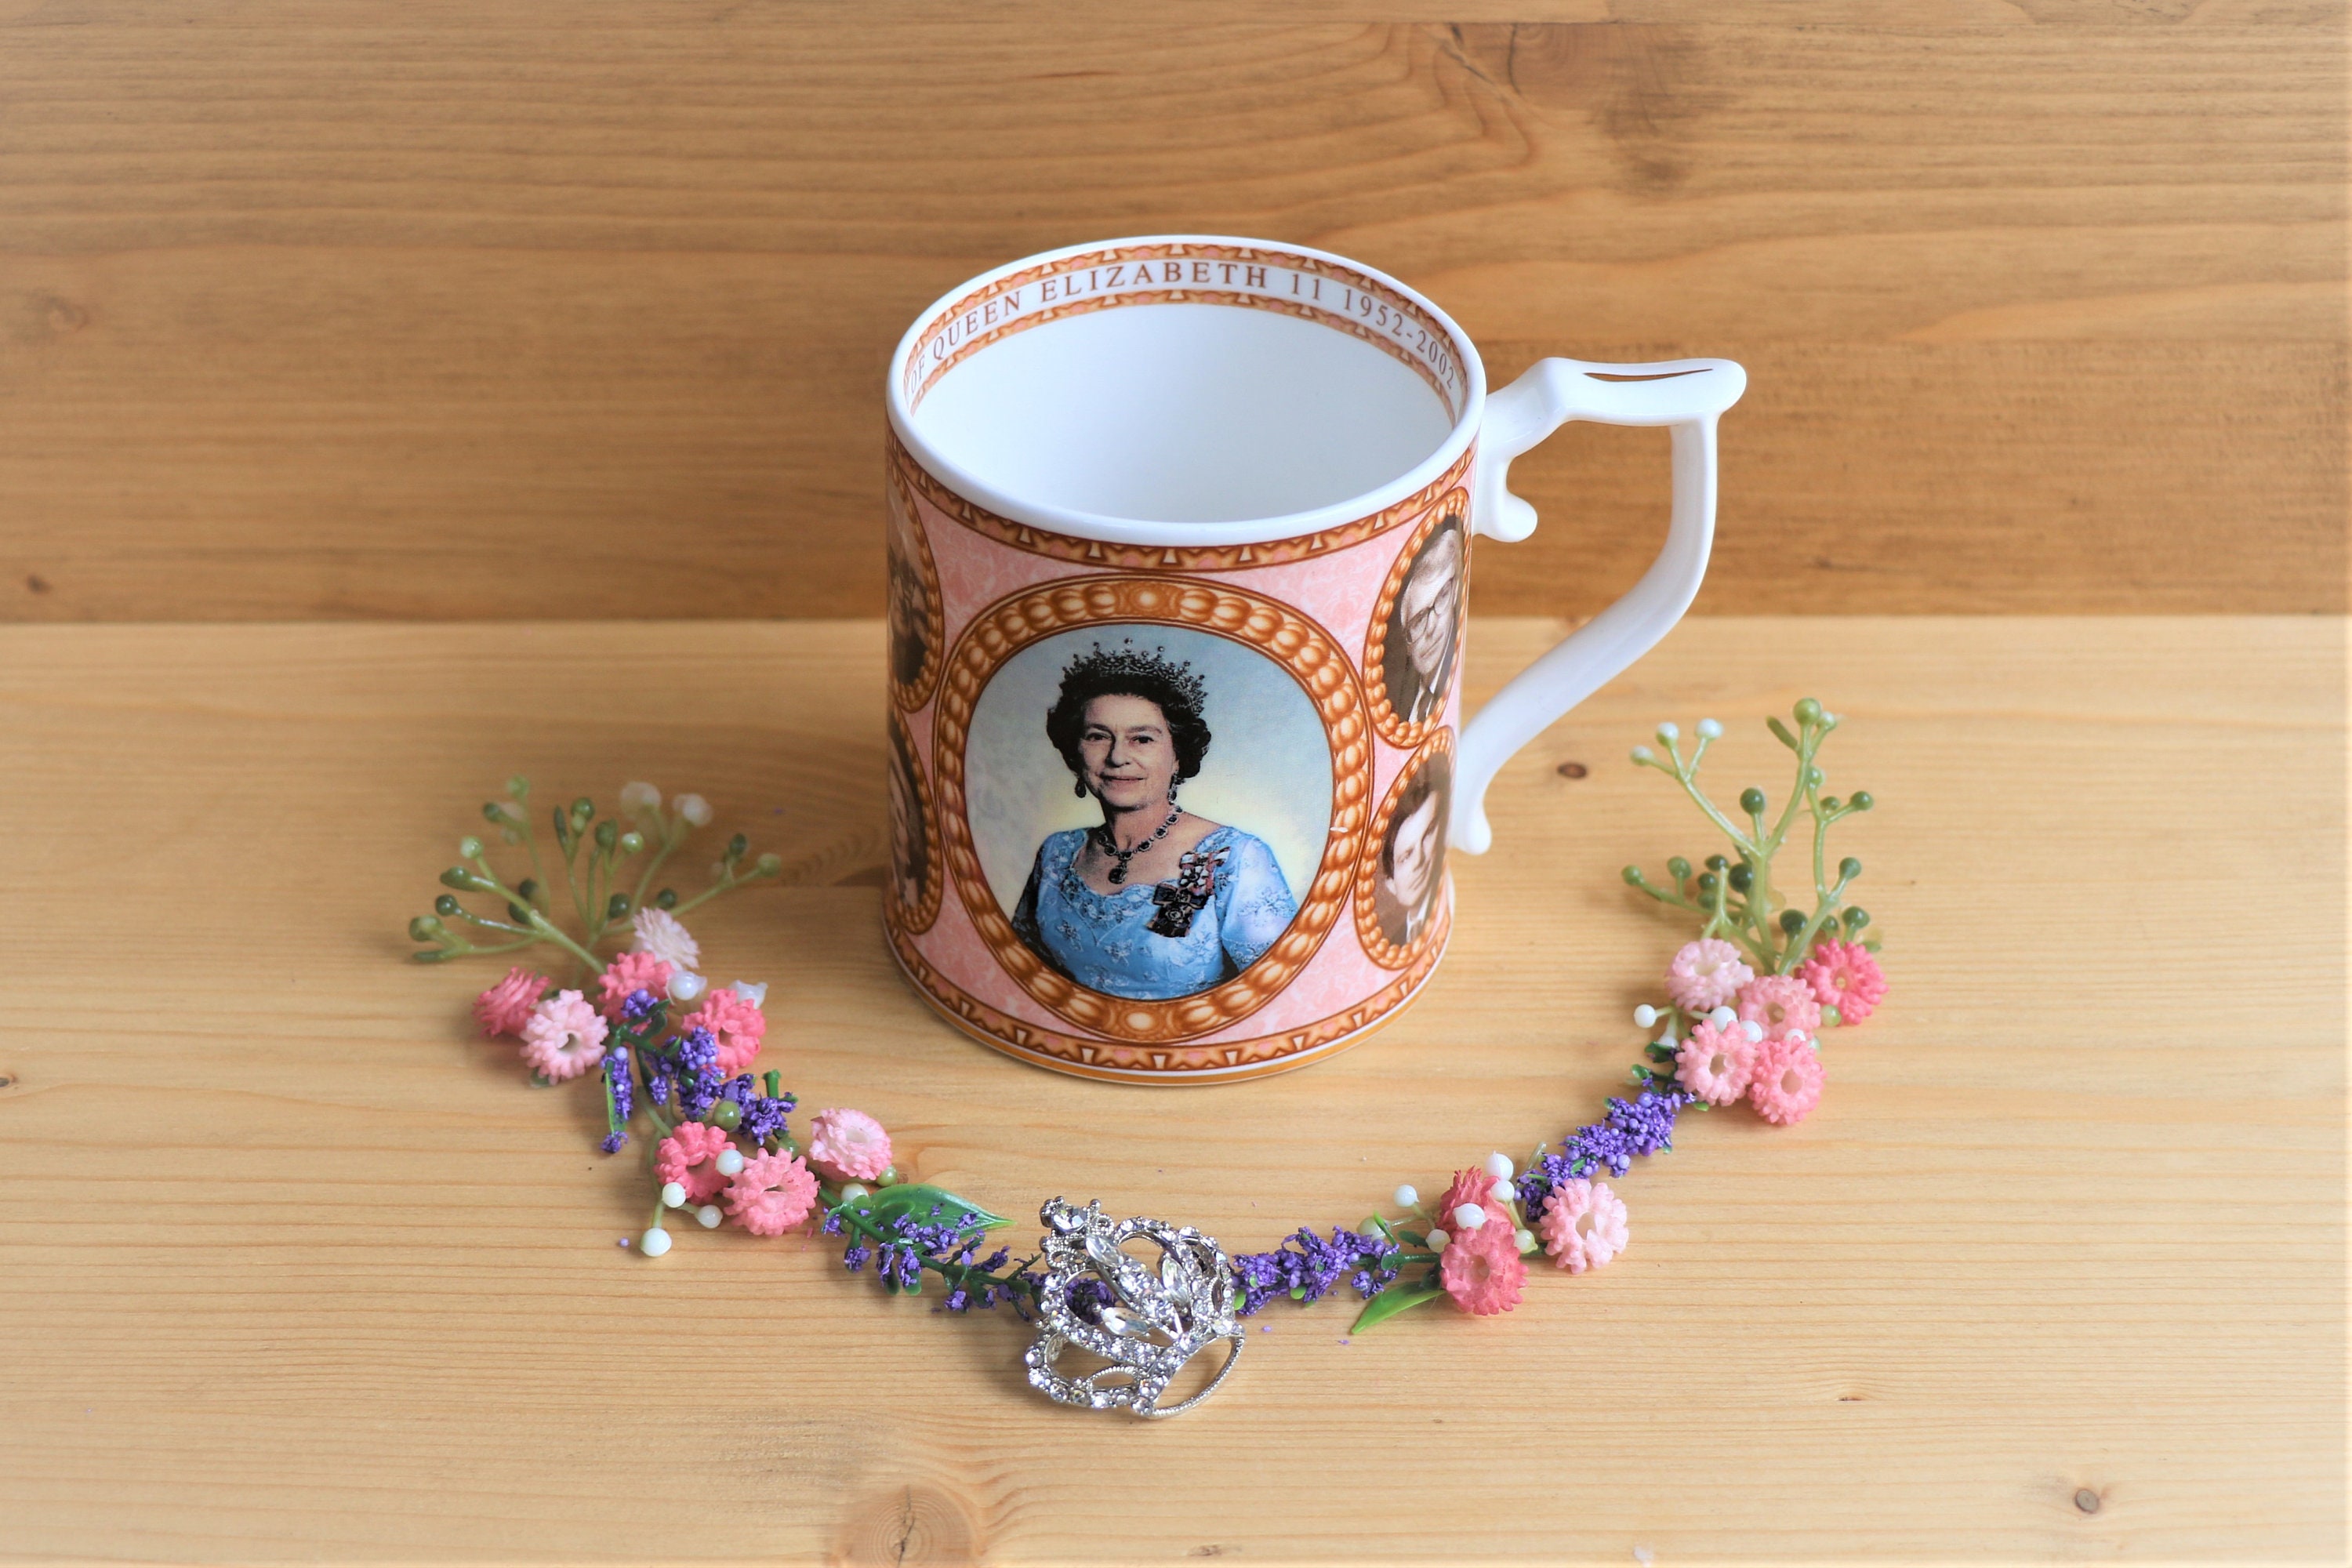 Regina Elisabetta II Giubileo di Diamante 1952-2012 Tazza Porcellana Cinese 